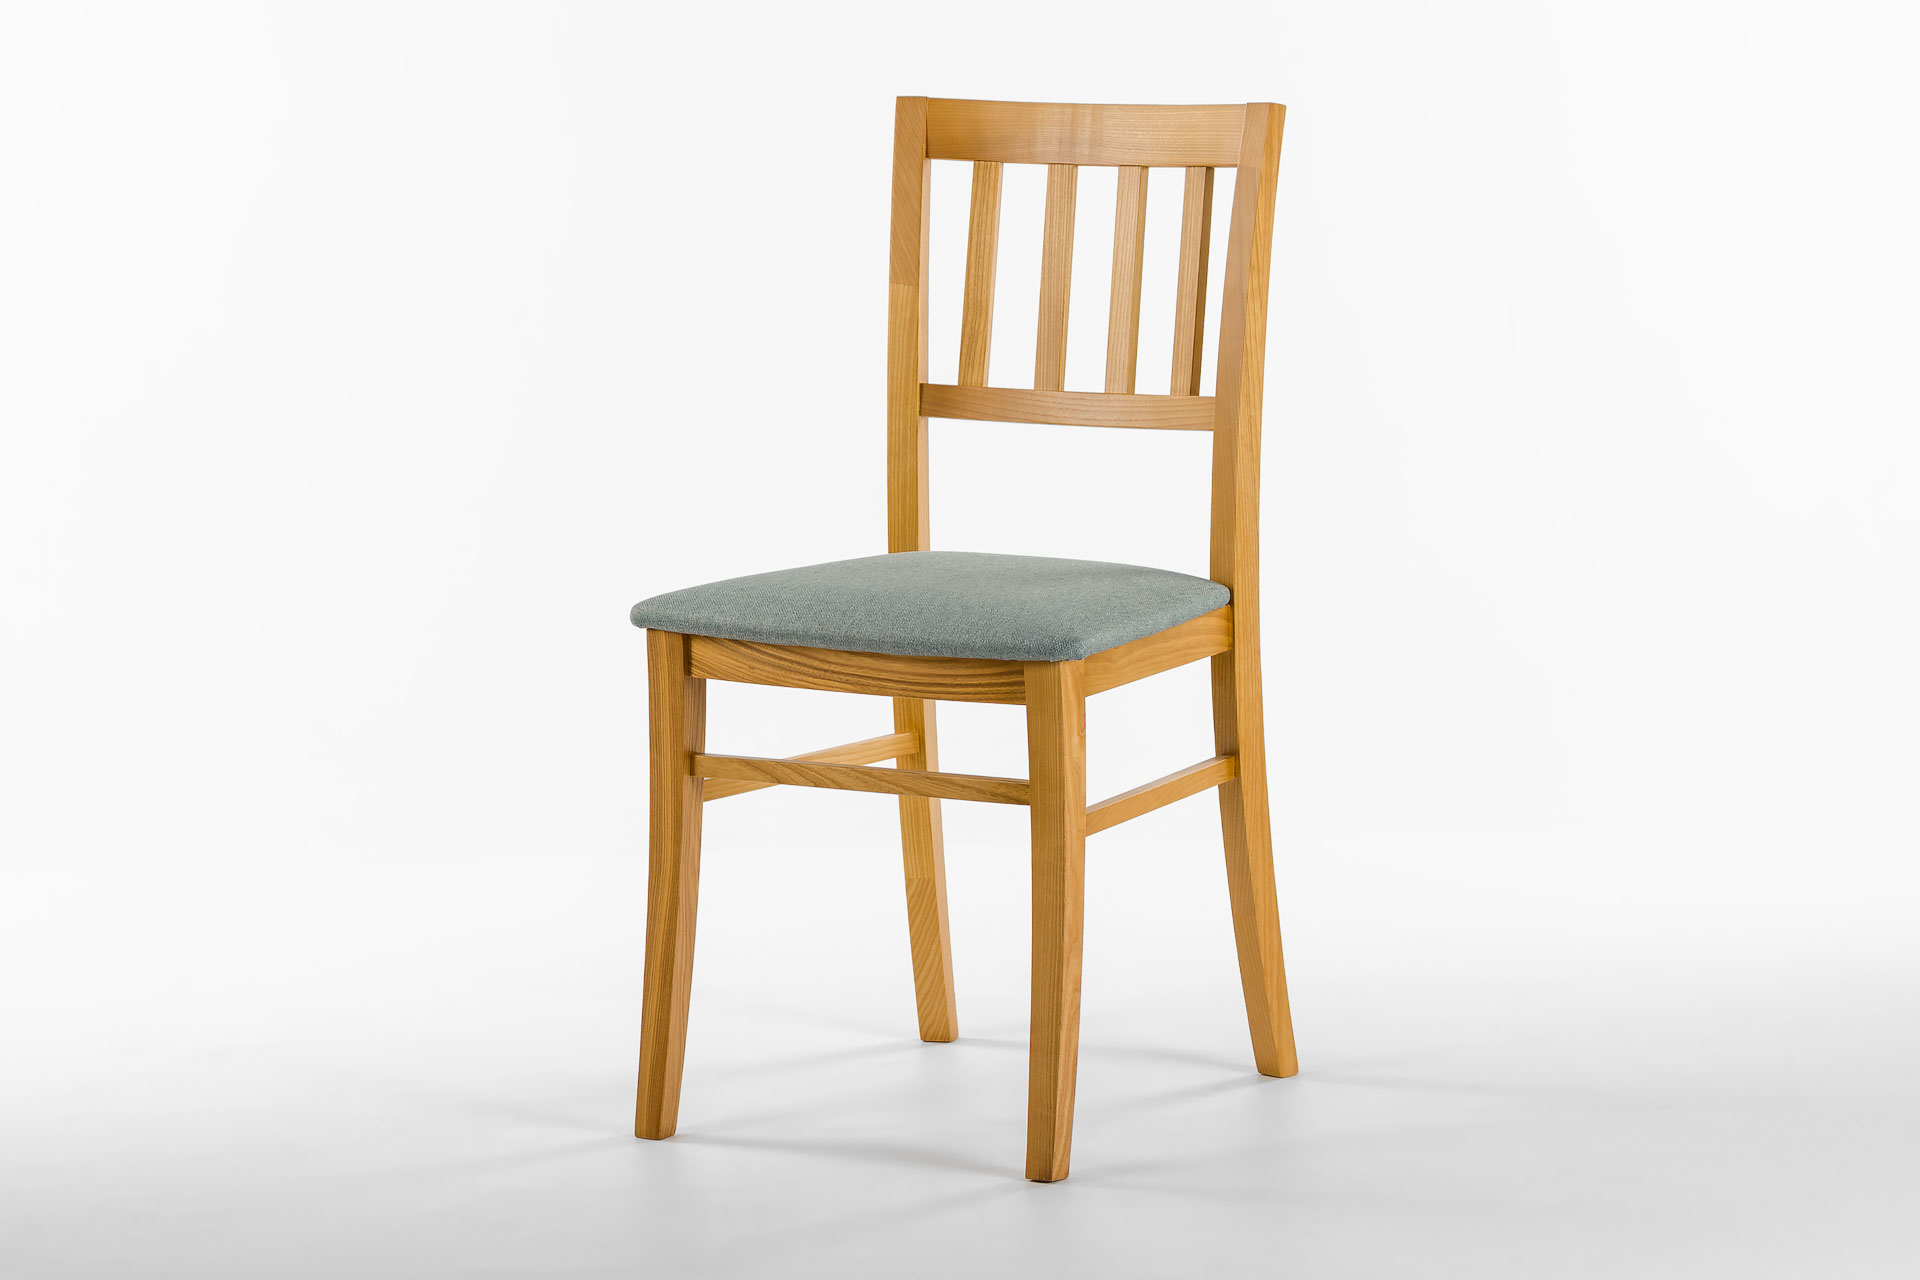 Кухонний стілець 08МВП з м'яким сидінням лазурного кольору, обивка рогожка Exim MALMO CADETBLUE 72 • OLEKSENKO Столи та Стільці •